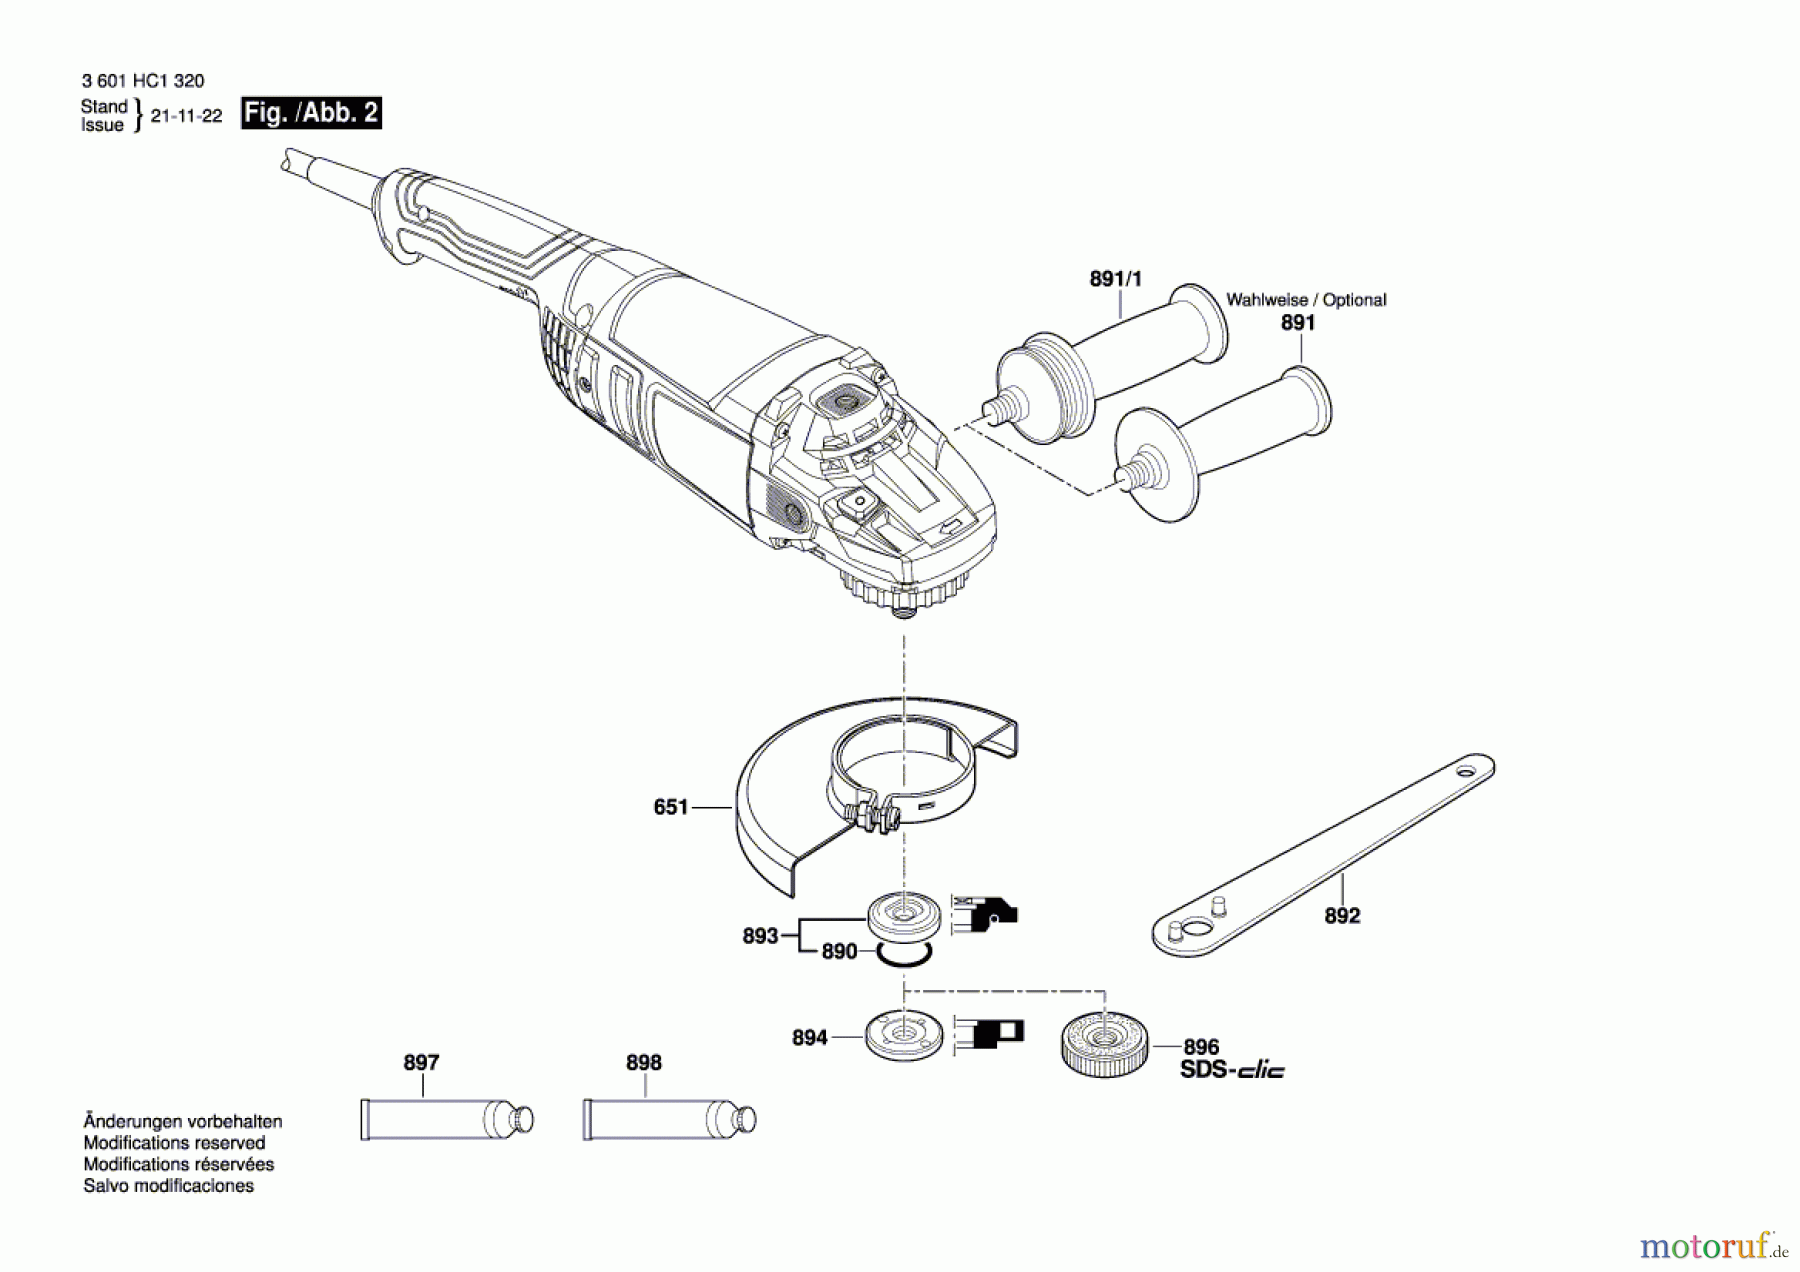  Bosch Werkzeug Winkelschleifer GWS 20-230 J Seite 2